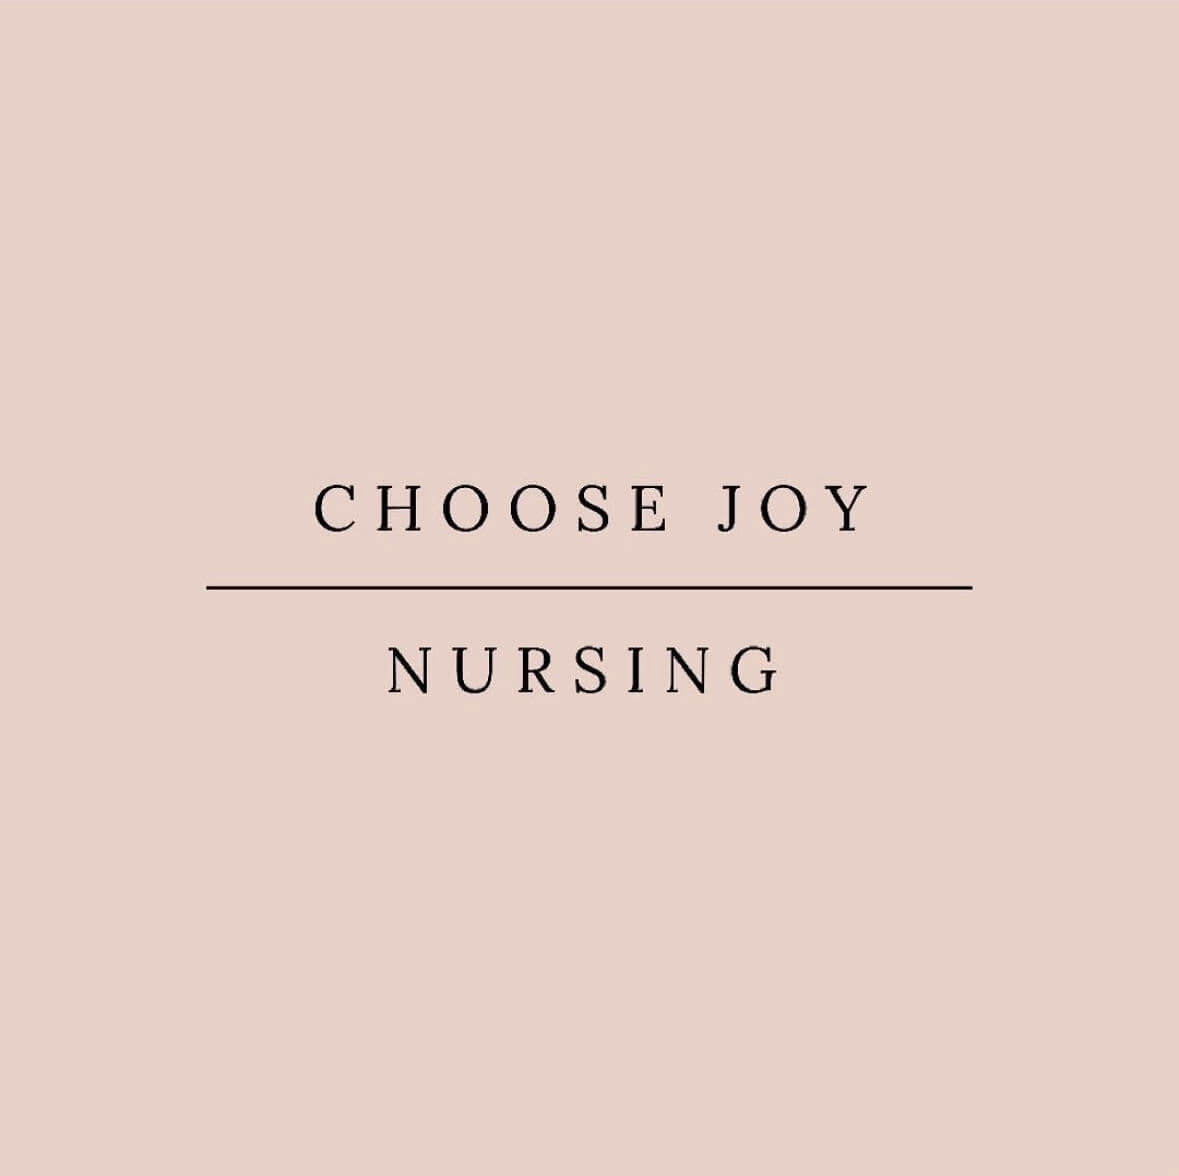 Choose Joy Nursing image